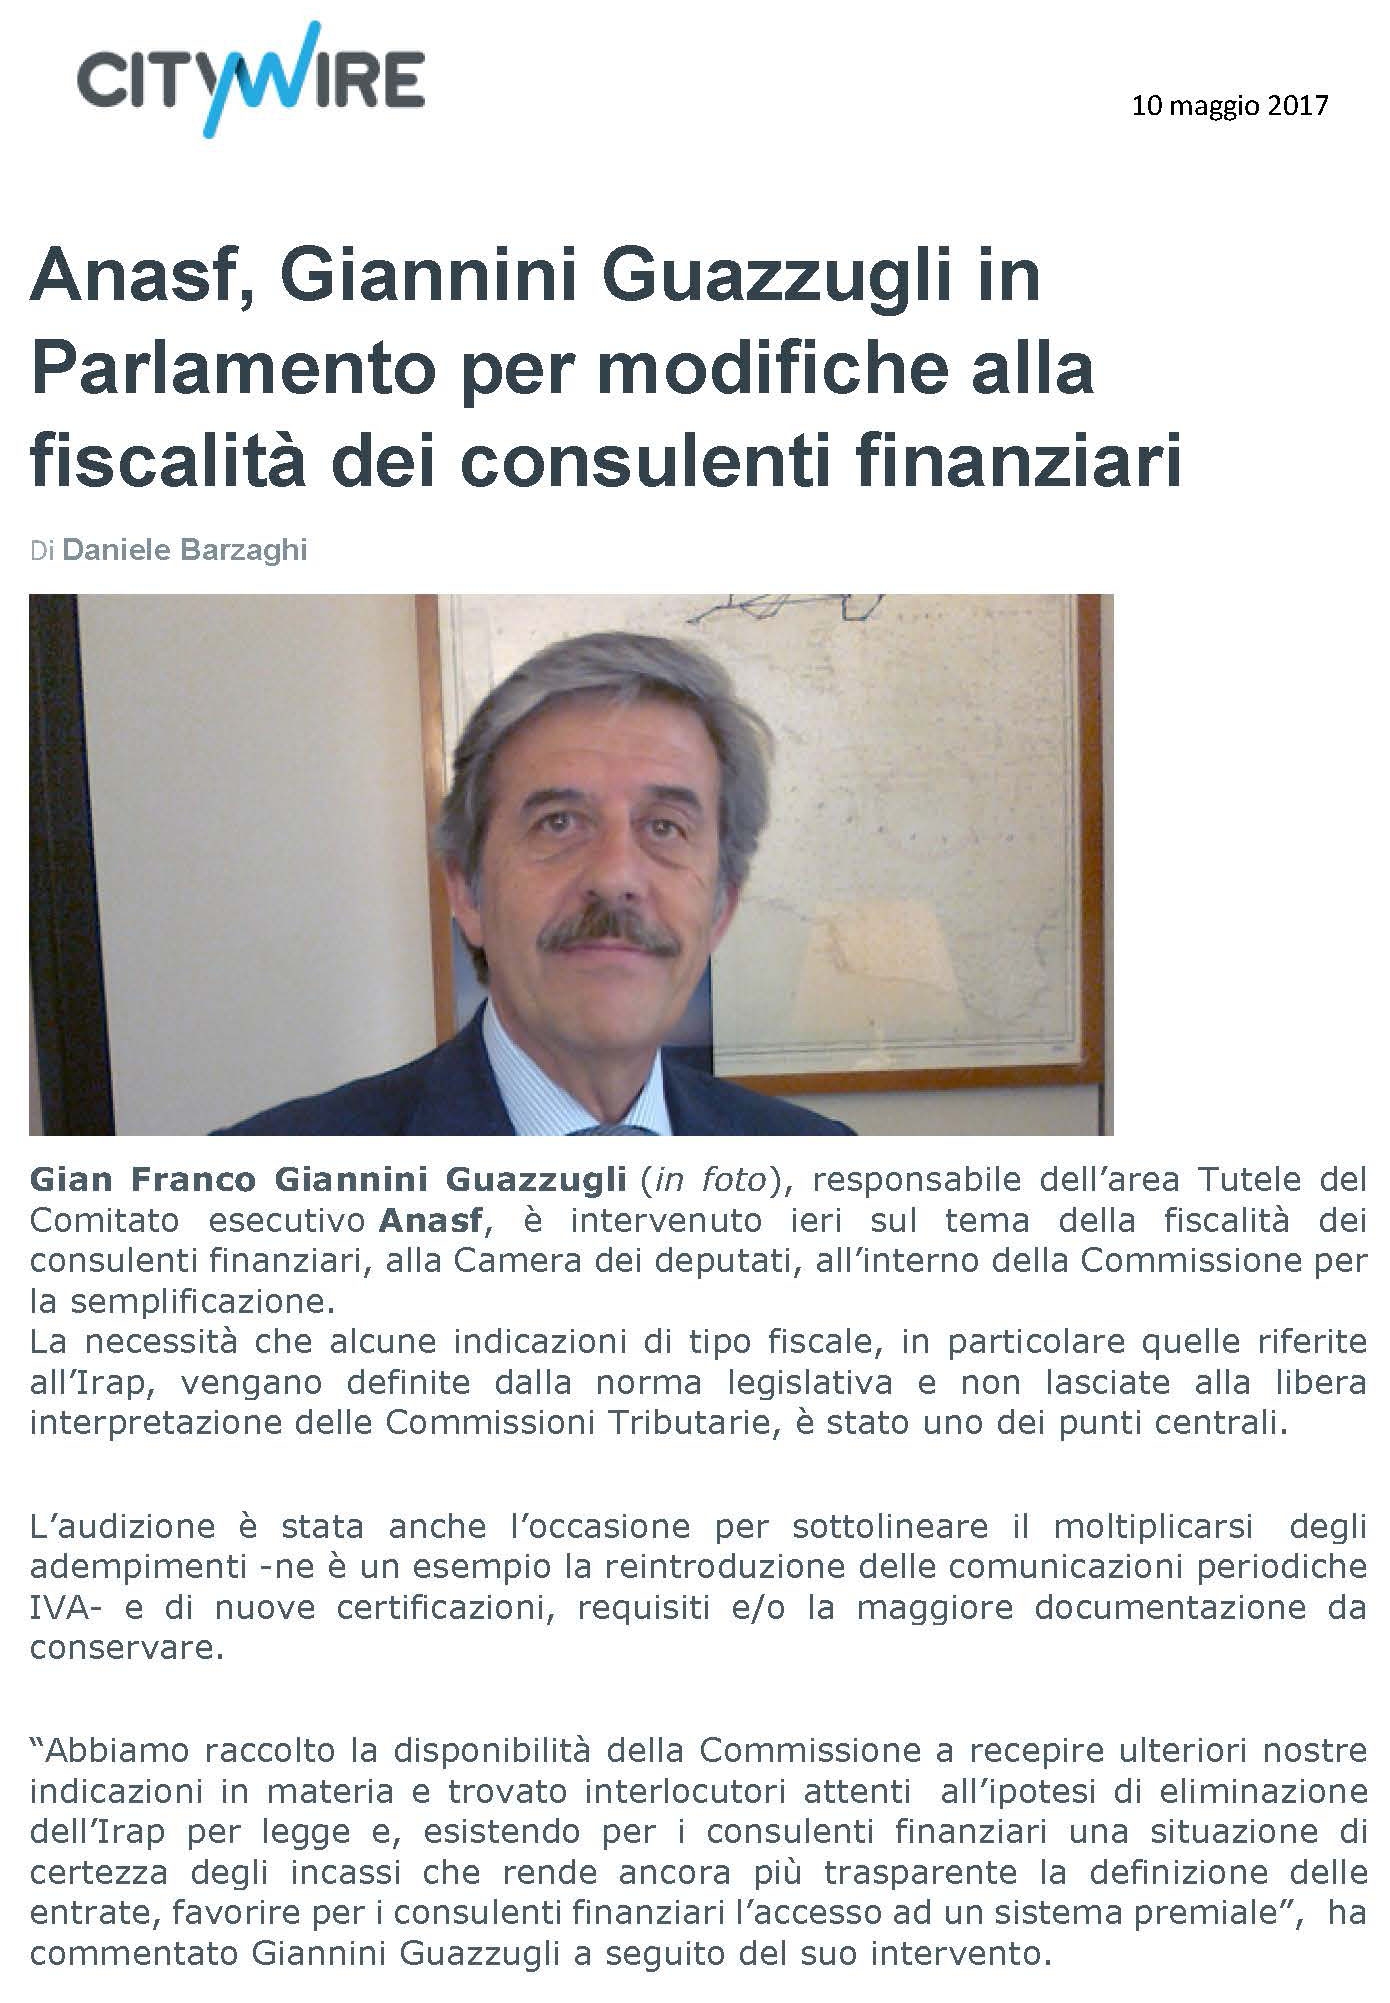 Anasf, Giannini Guazzugli in Parlamento per modifiche alla fiscalità dei consulenti finanziari